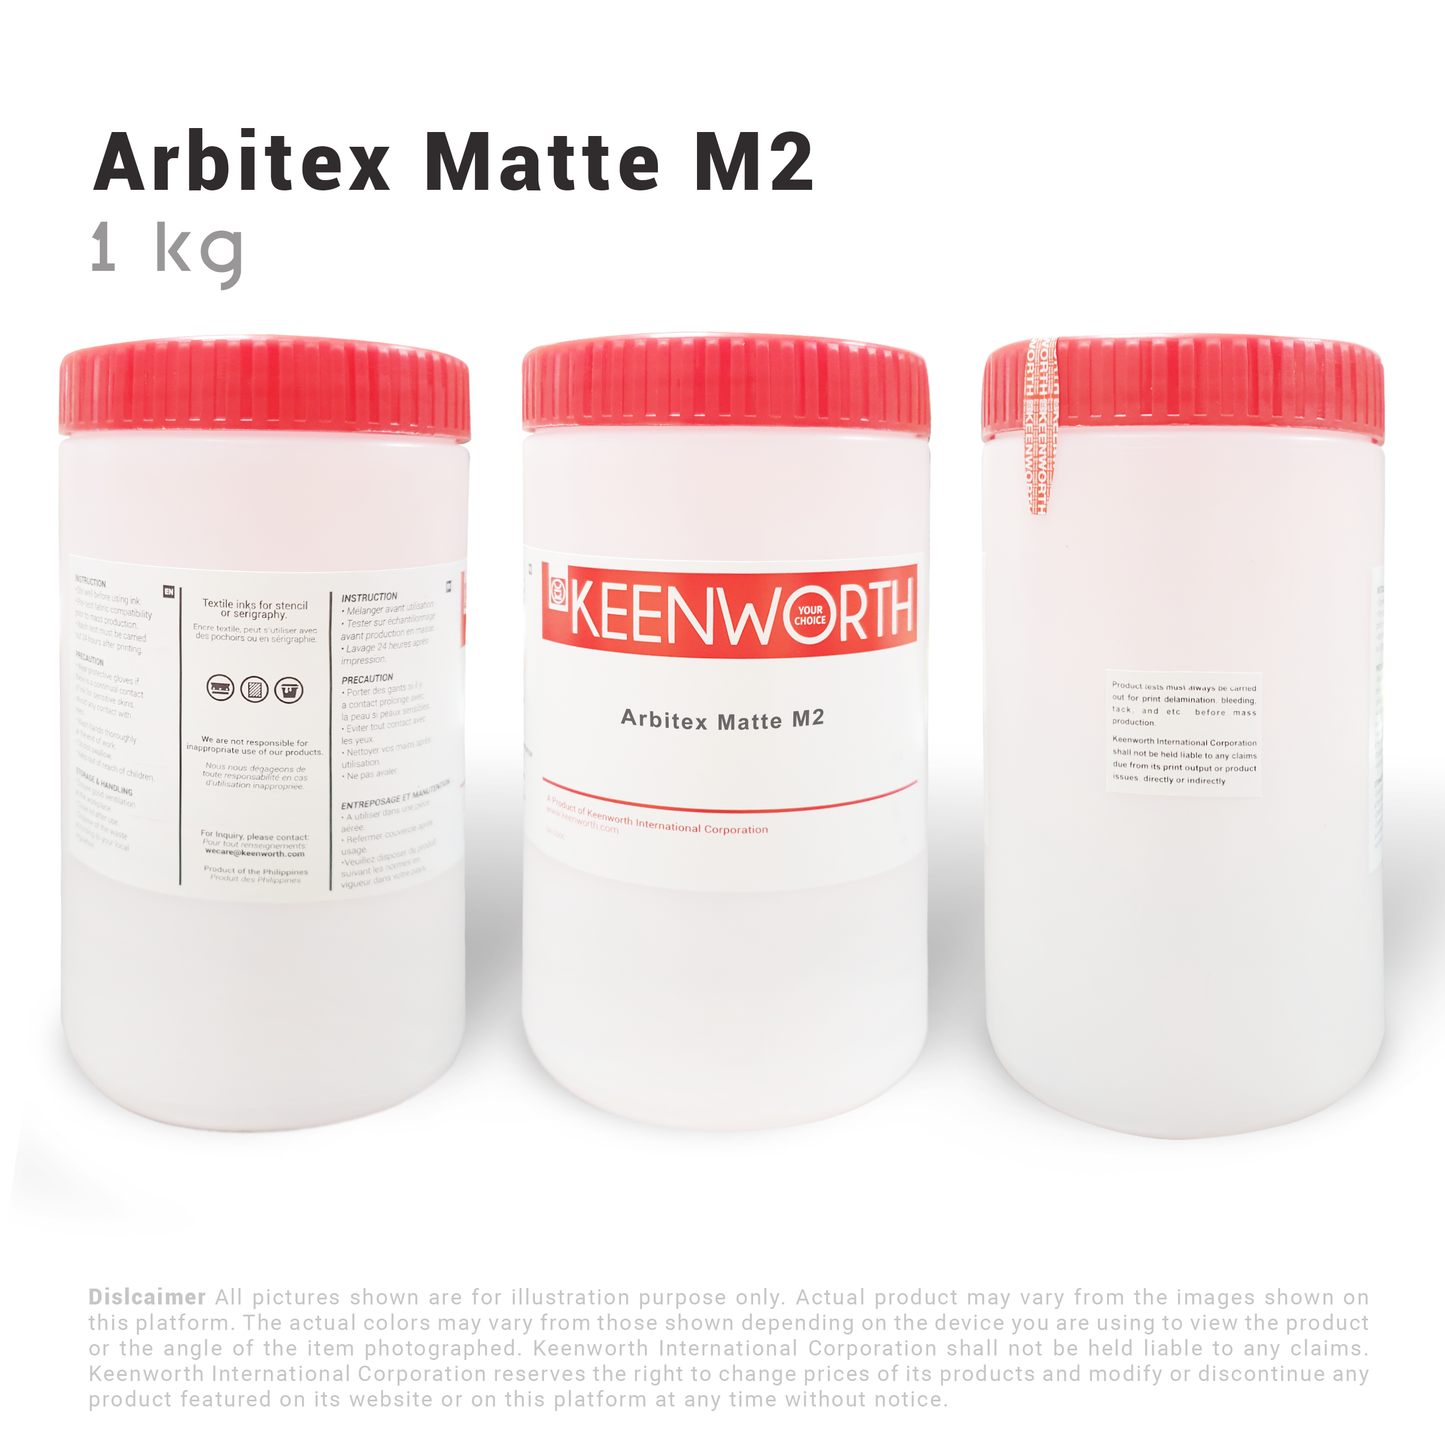 Arbitex Matte M2